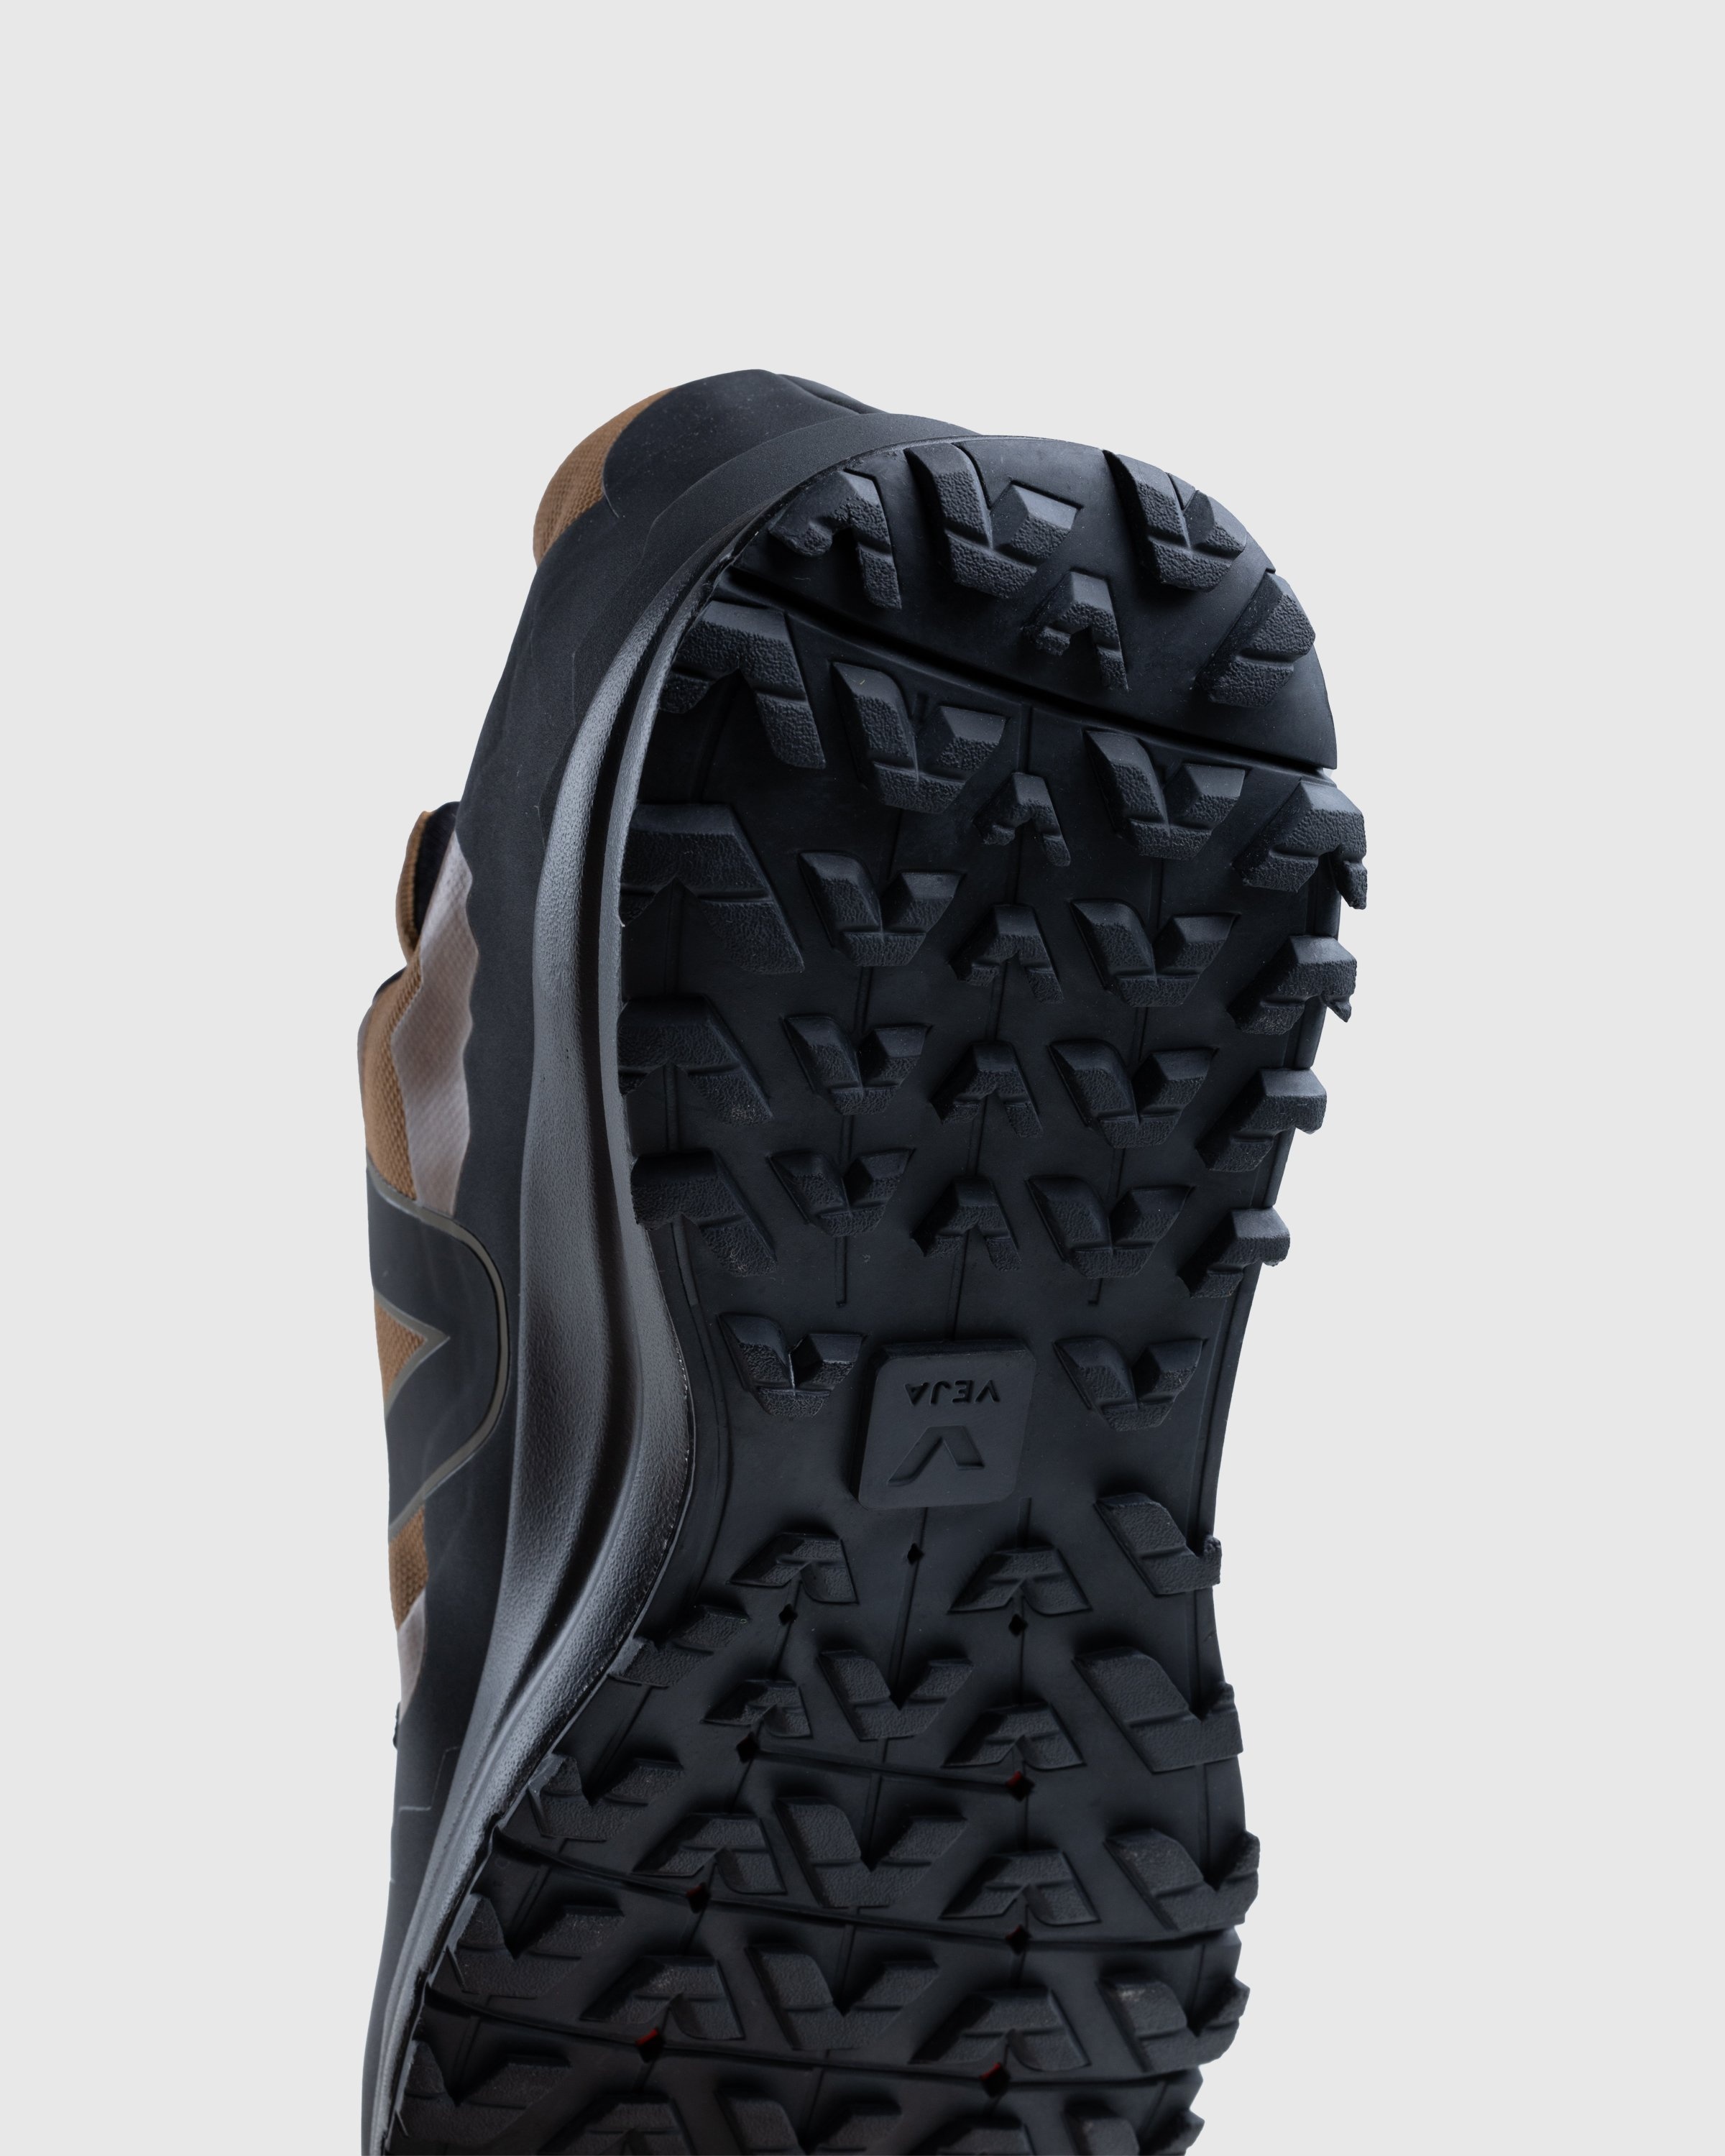 VEJA – Fitz Roy Trek Shell Terra Black - Sneakers - Multi - Image 6